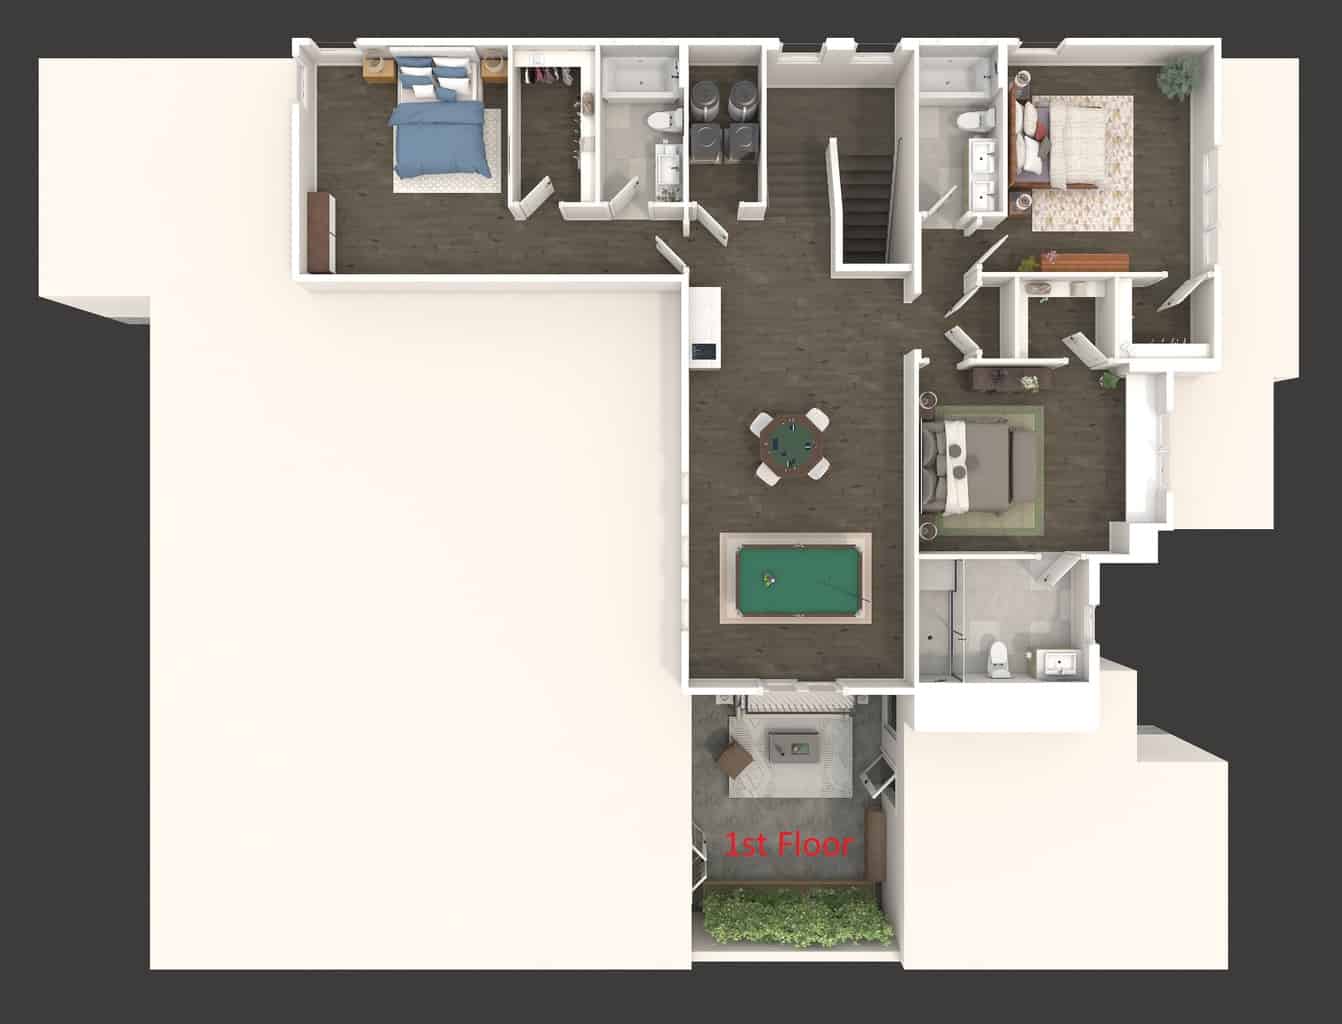 Floorplan - 3D - 2nd Floor